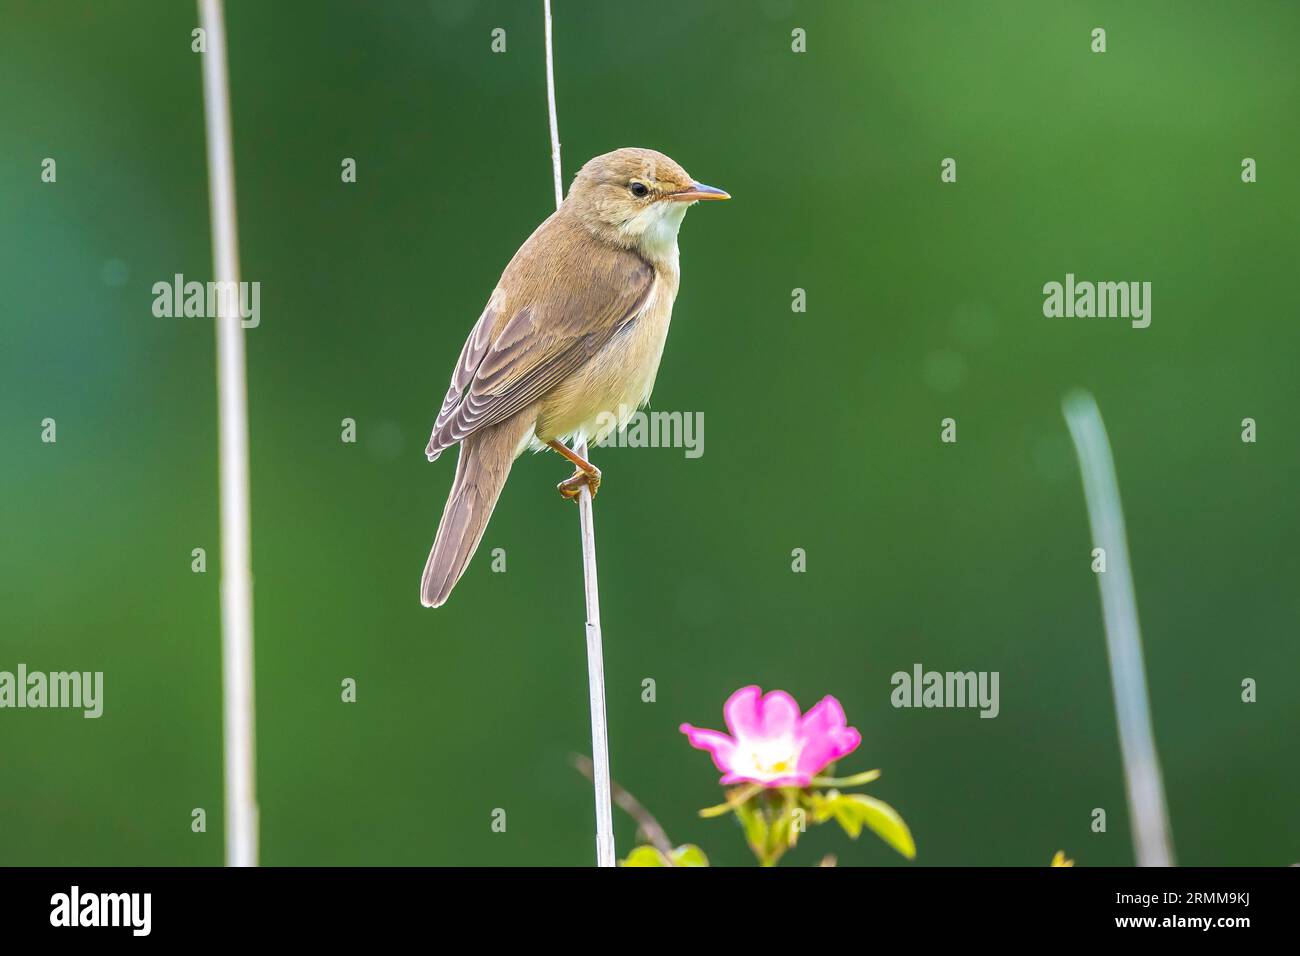 Palustris di palude, Acrocephalus, uccello che cantano in un campo con fiori gialli Foto Stock